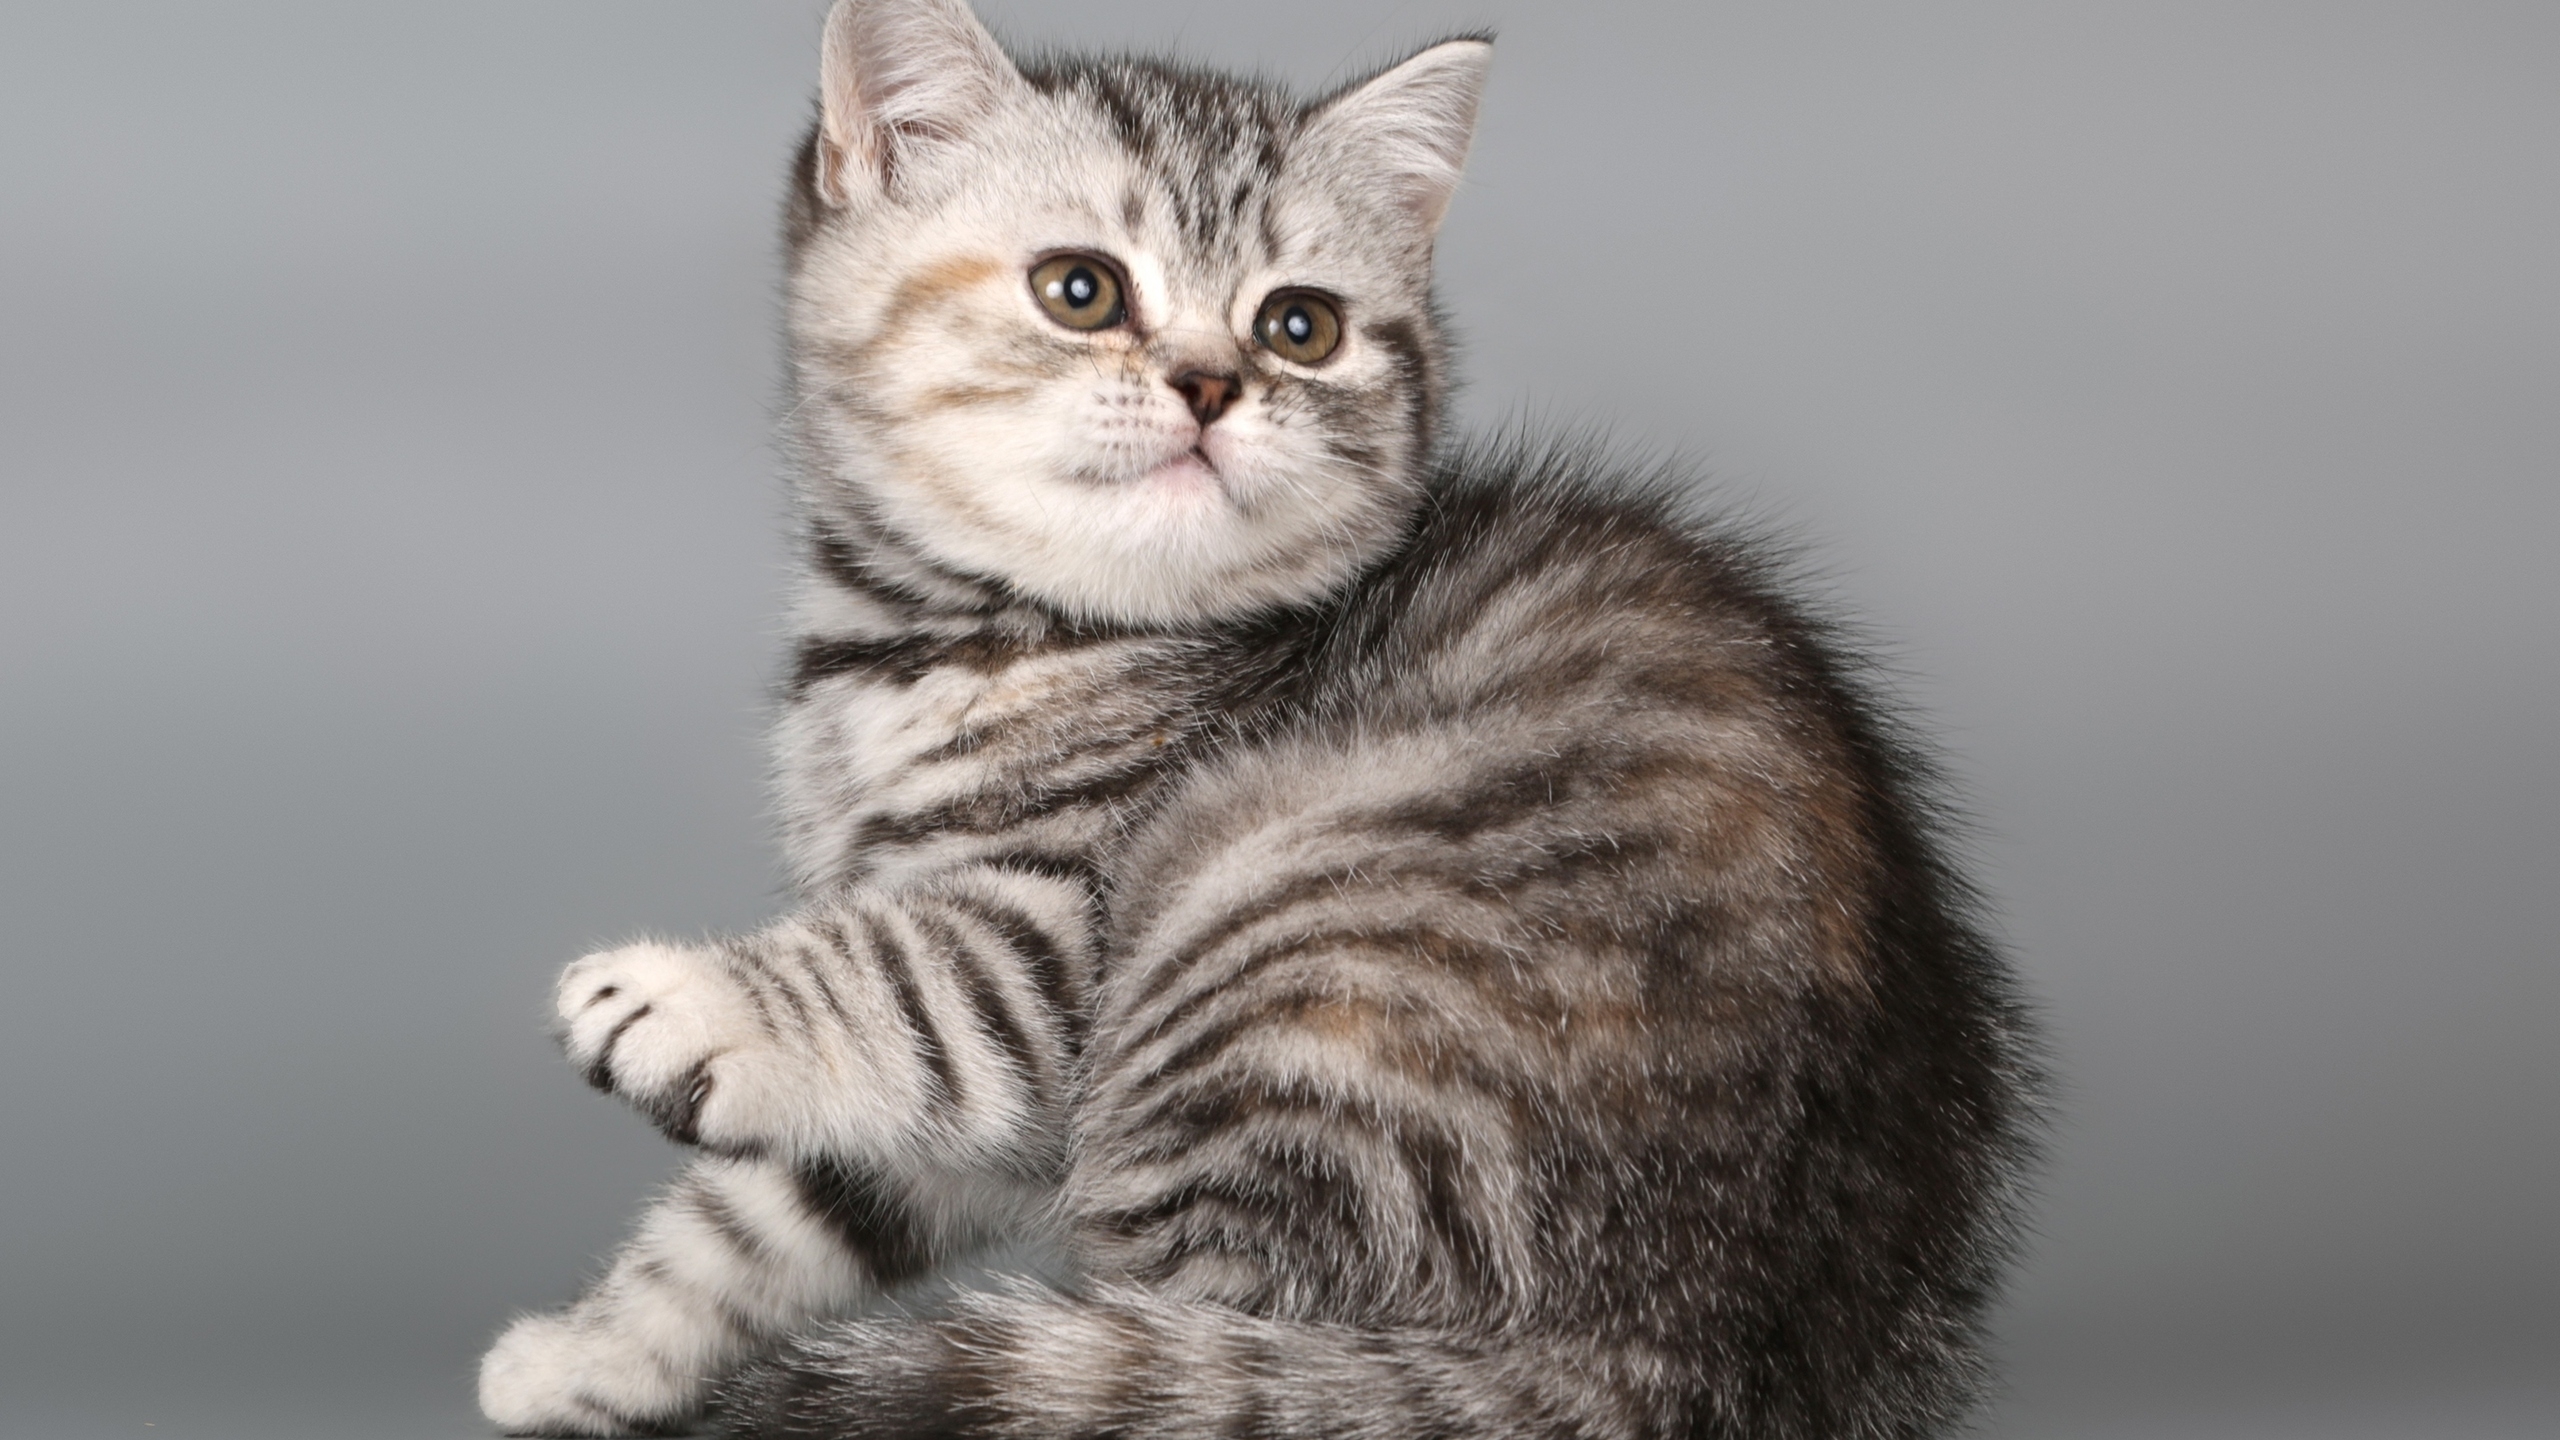 British Shorthair Kitten for 2560x1440 HDTV resolution